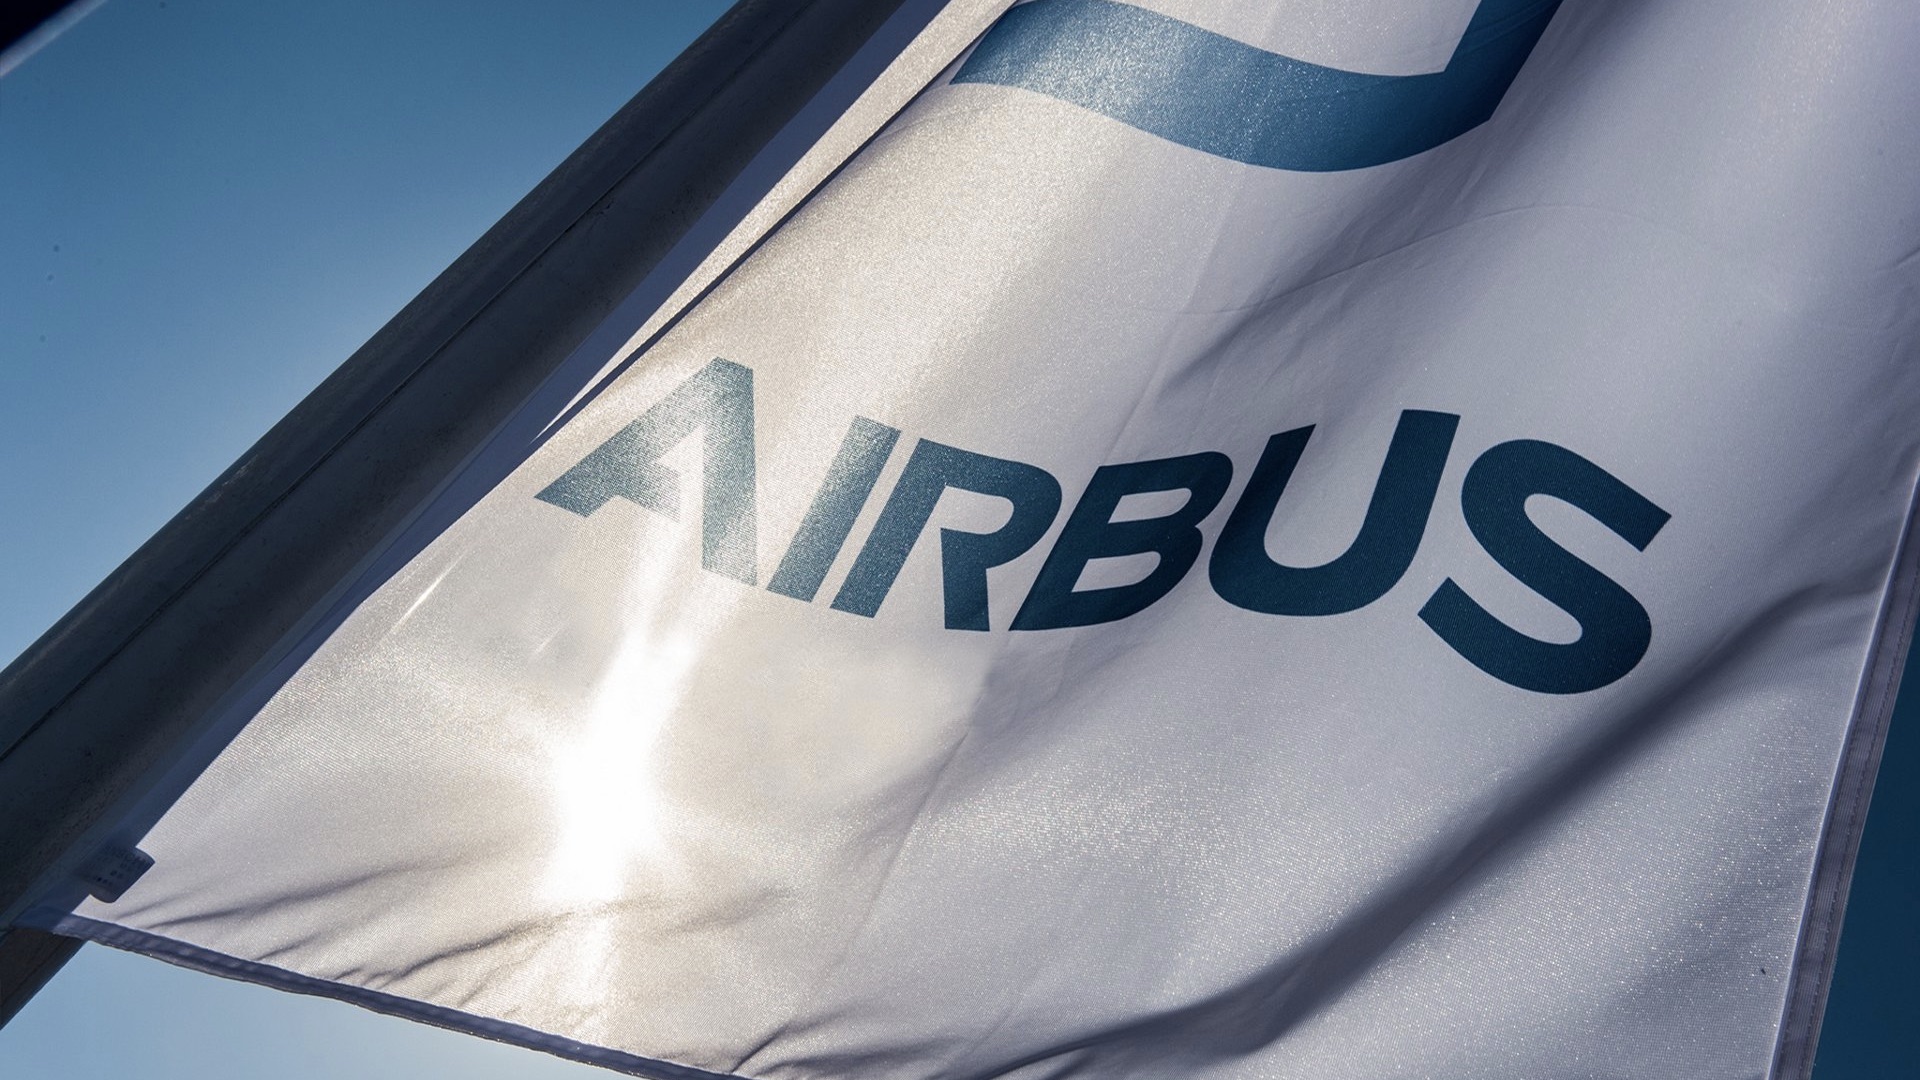 Airbus Flag